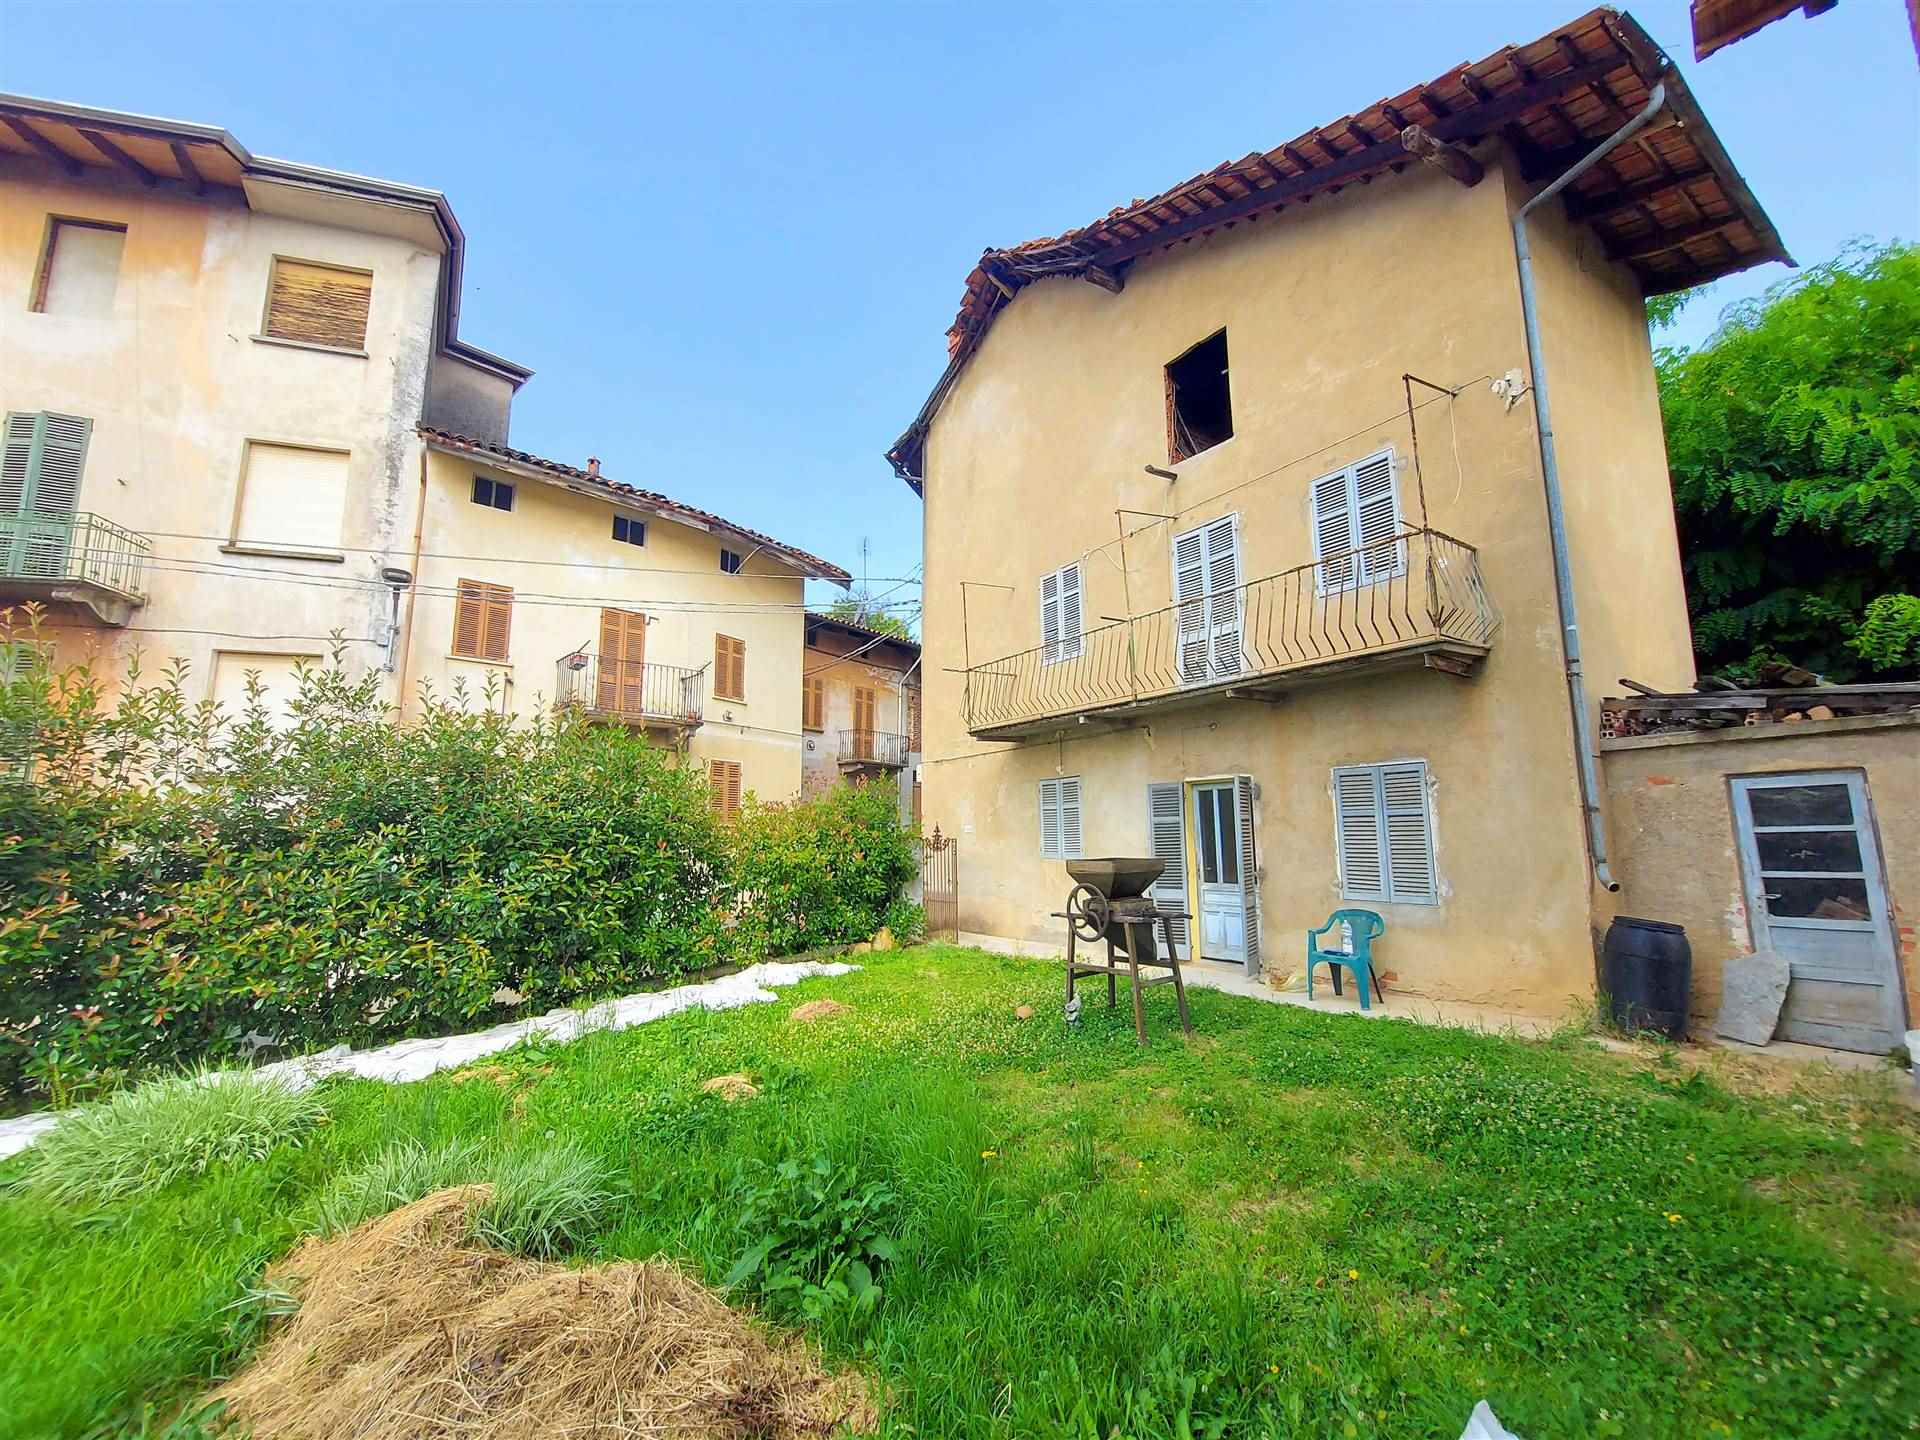 Casa singola in Frazione Mercandetti 8 in zona Mercandetti a Masserano